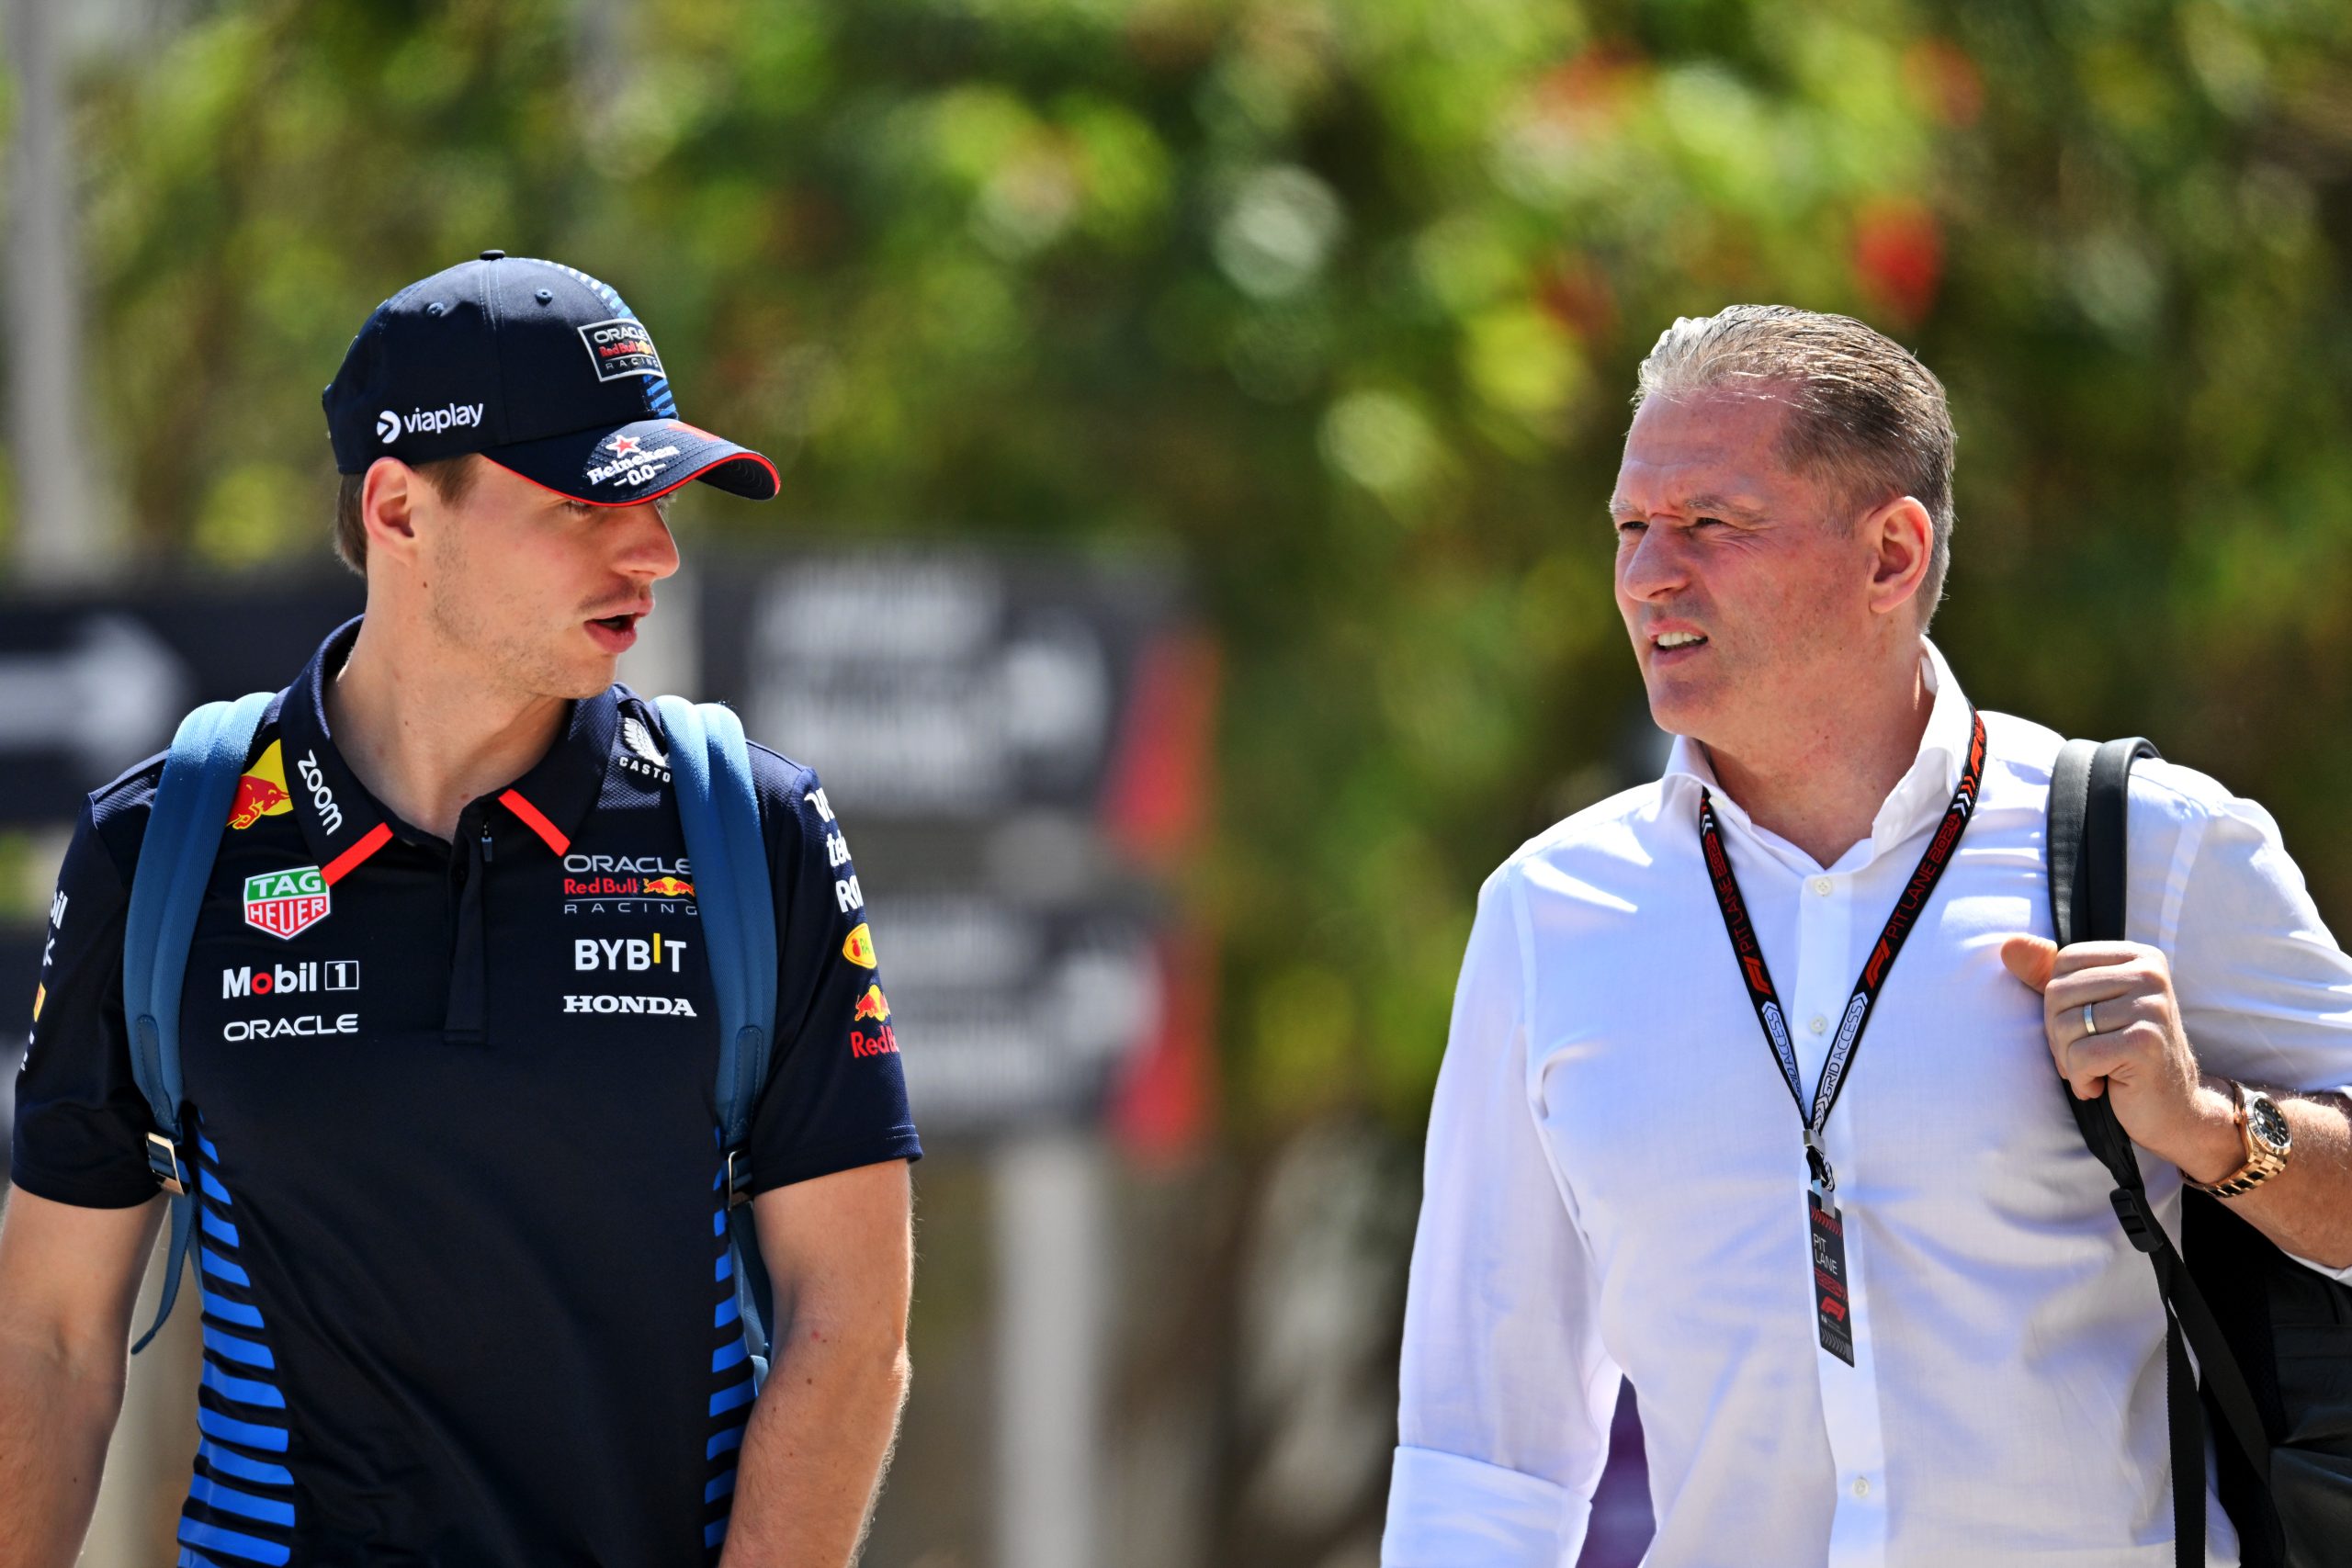 Jos Verstappen says Red Bull F1 will “explode” if Horner stays